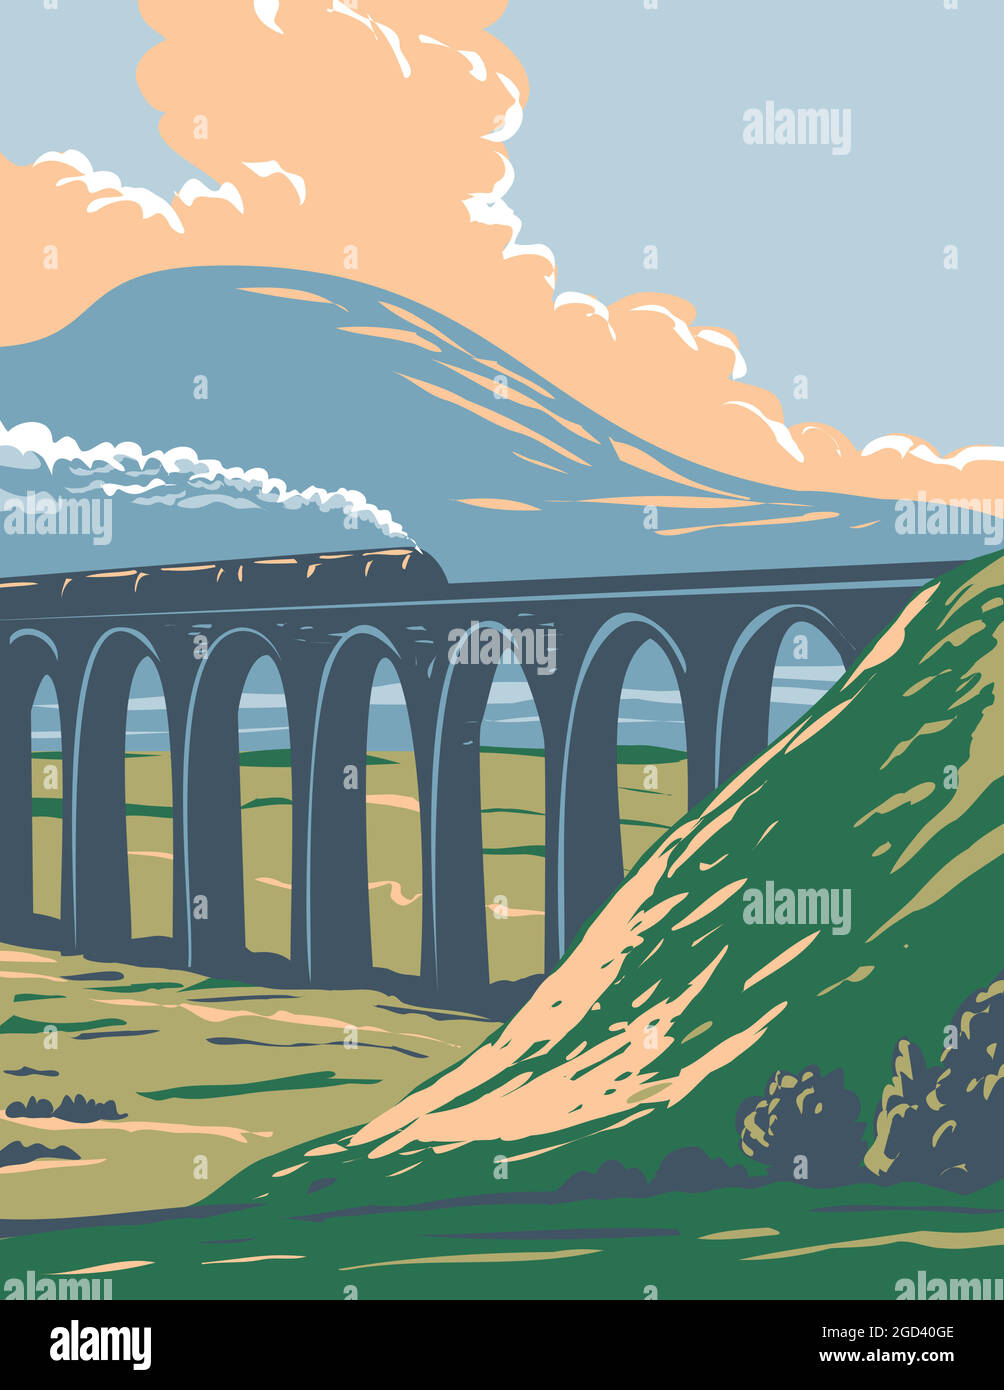 Poster in stile Art Deco o WPA del treno a vapore sulla ferrovia su Batty Moss o Ribblehead Viaduct nello Yorkshire Dales National Park, Inghilterra settentrionale, United King Illustrazione Vettoriale